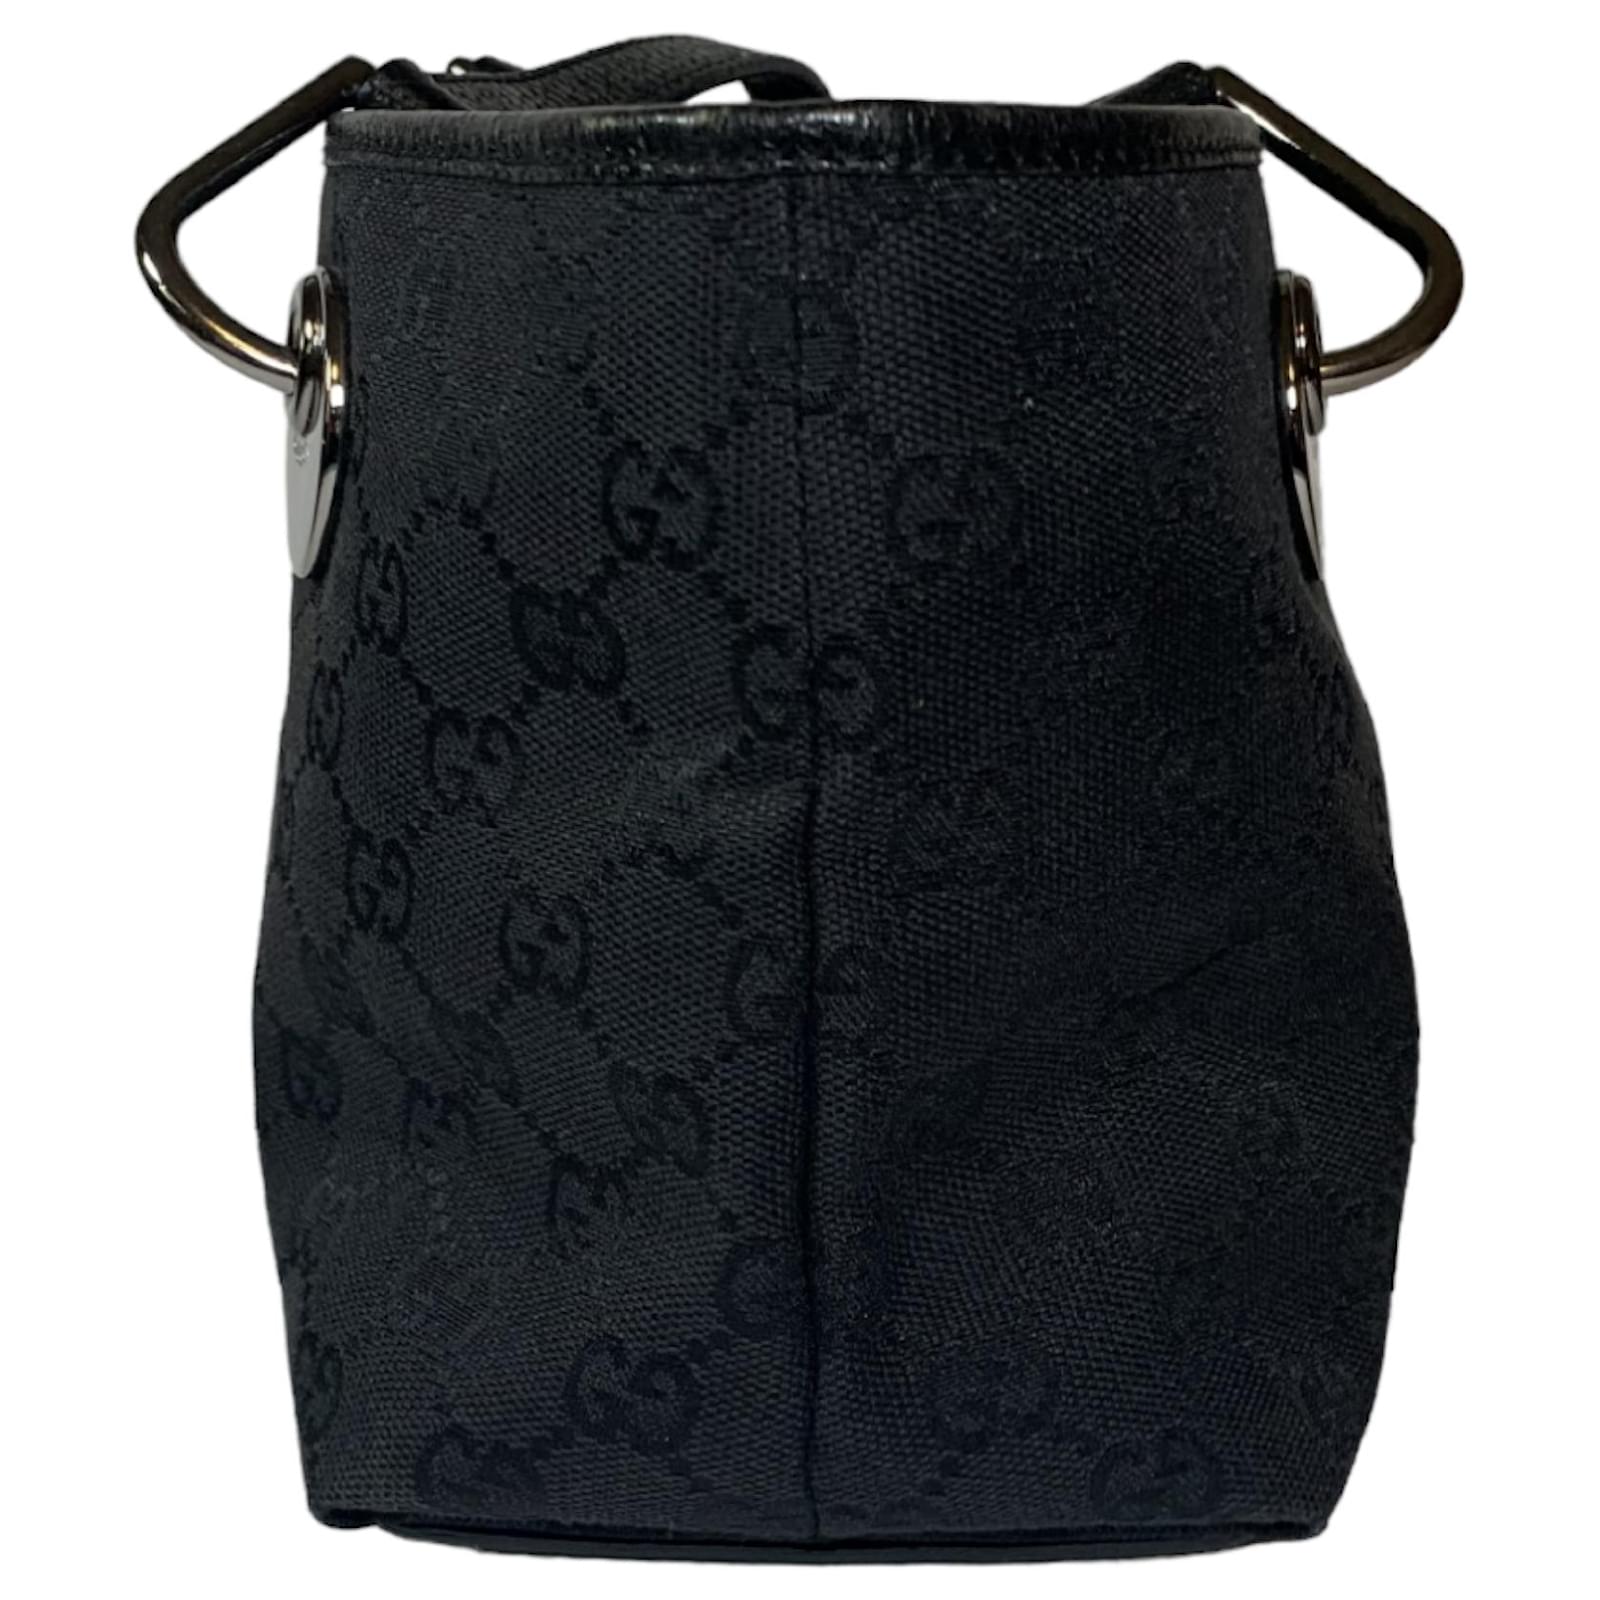 Gucci Canvas Shoulder Bag Black GG canvas silver hardware one shoulder bag